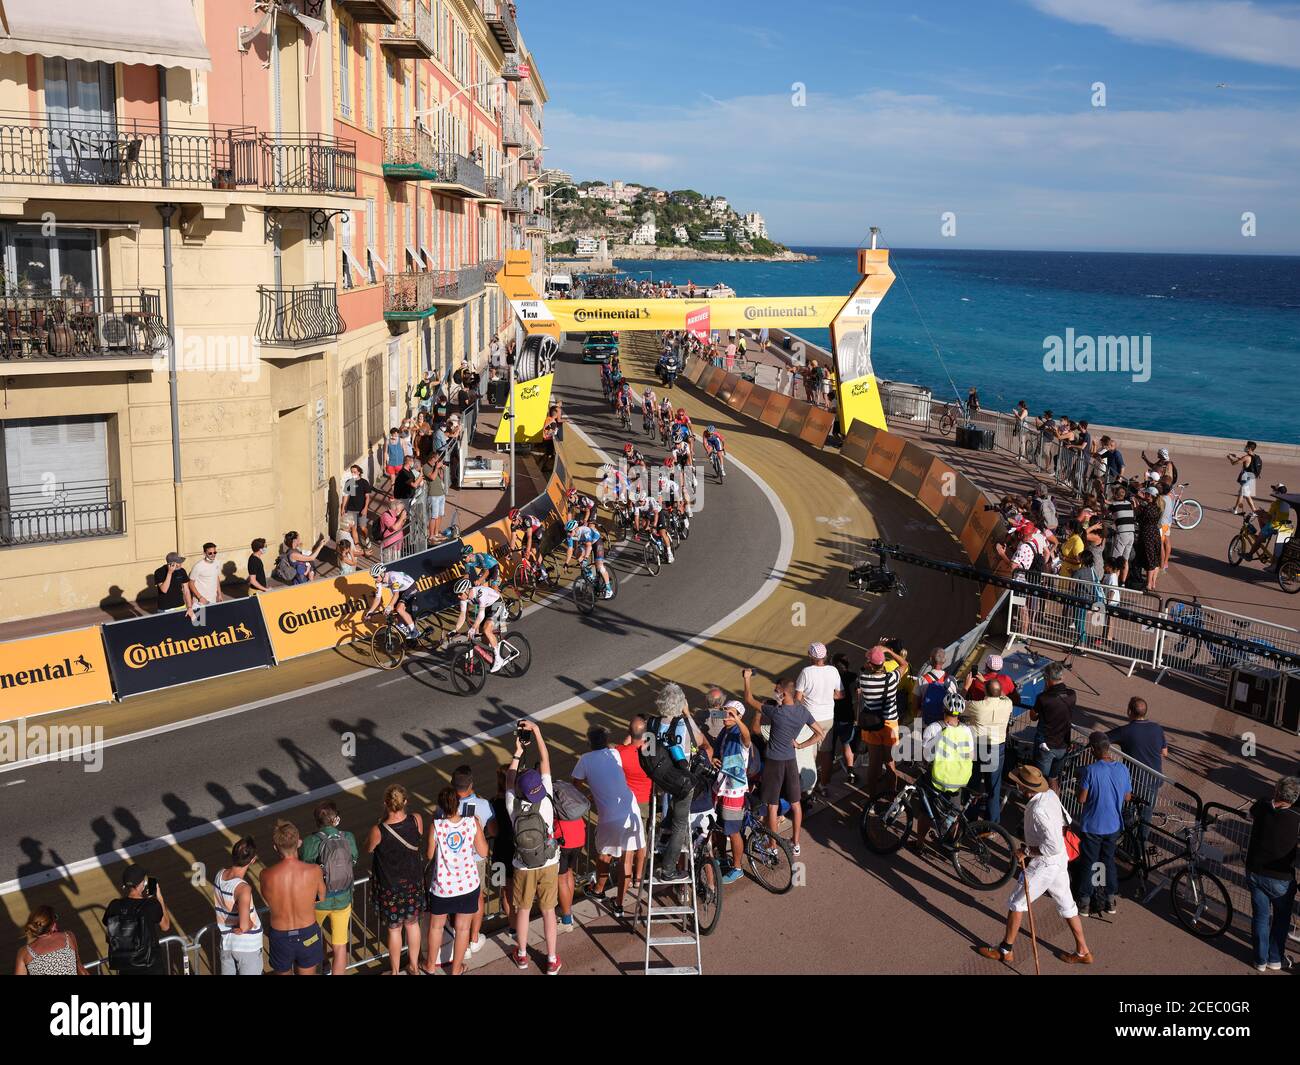 VUE AÉRIENNE depuis un mât de 6 mètres.Foule regardant le Tour de France 2020, étape 2, à la marque de 1 km avant la ligne d'arrivée.Nice, Côte d'Azur. Banque D'Images